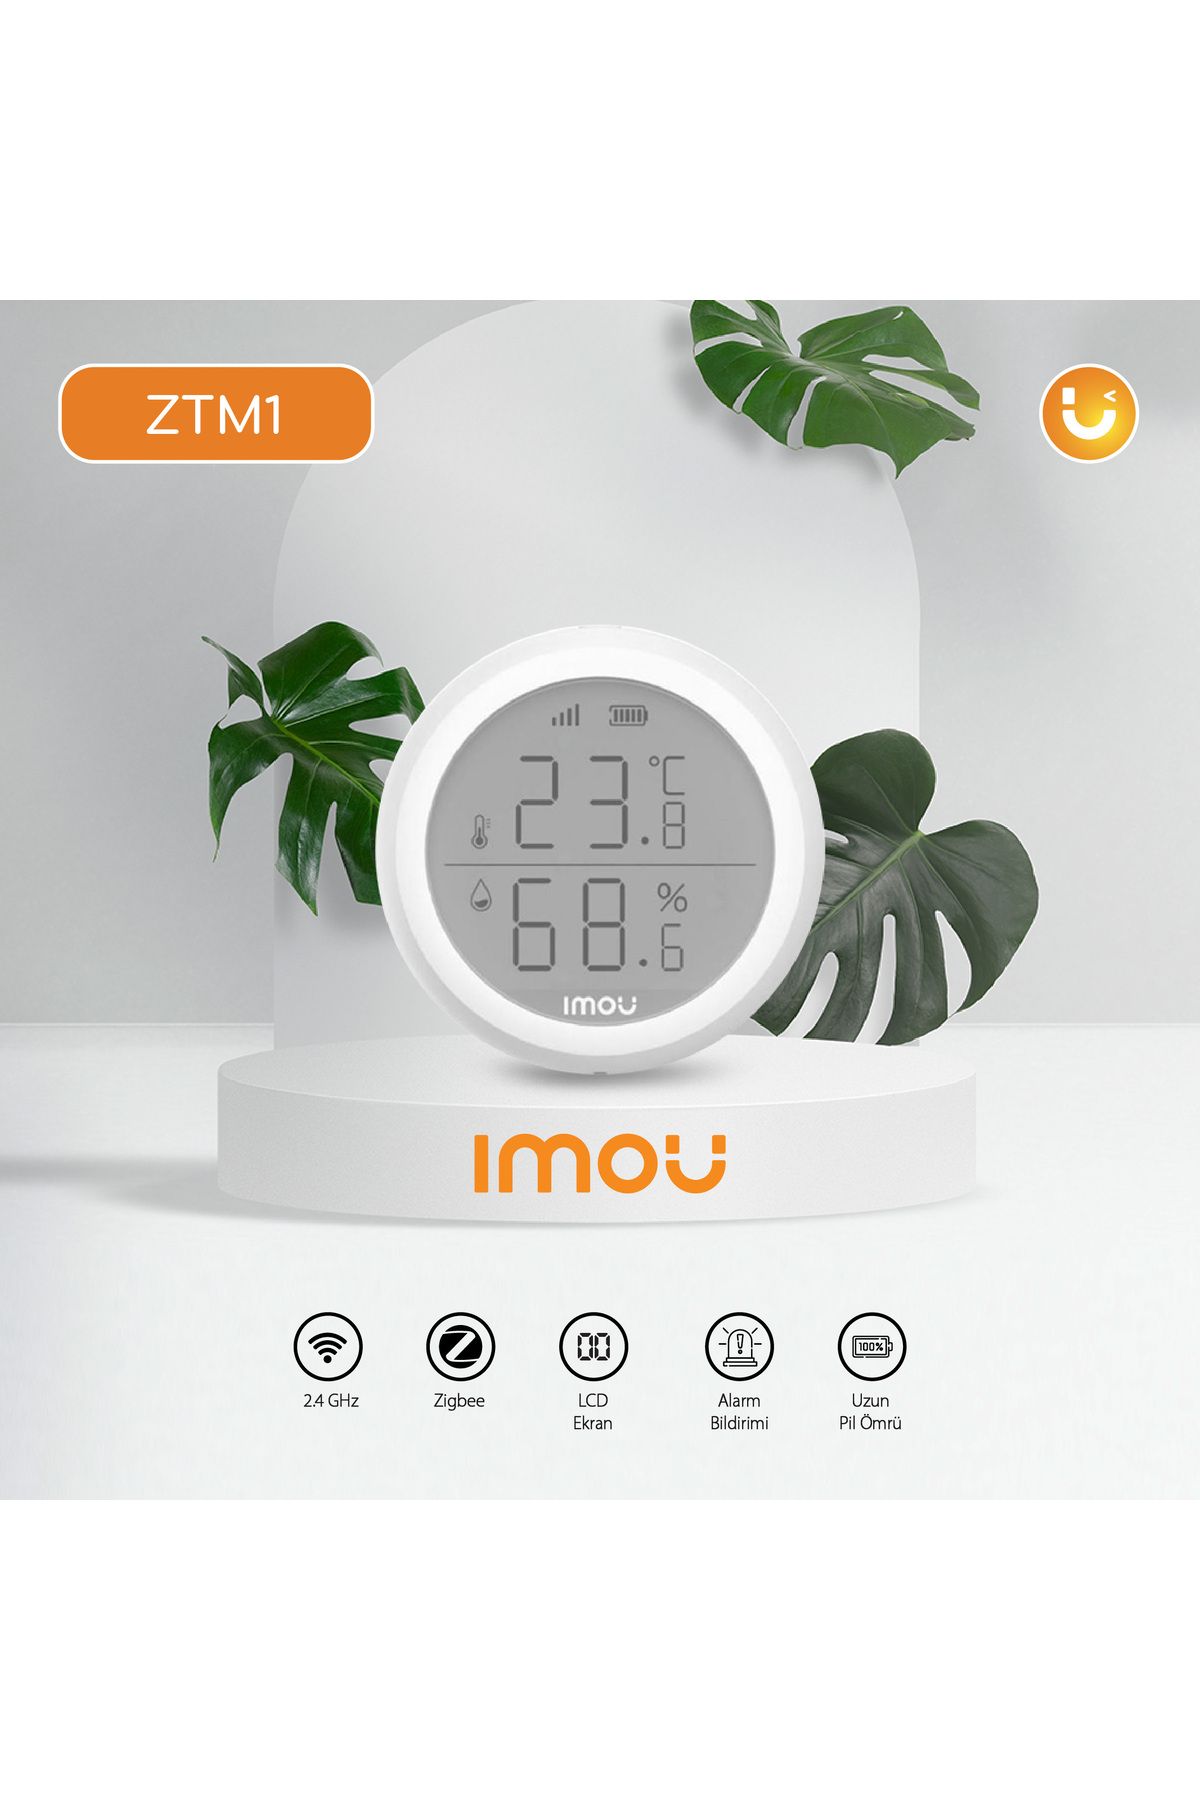 Imou Kablosuz Sıcaklık Dedektörü-LCD Ekran-Alarm Bildirimi-Zigbee-Buzzer Ses Şiddeti: ?85dB (ZTM1)